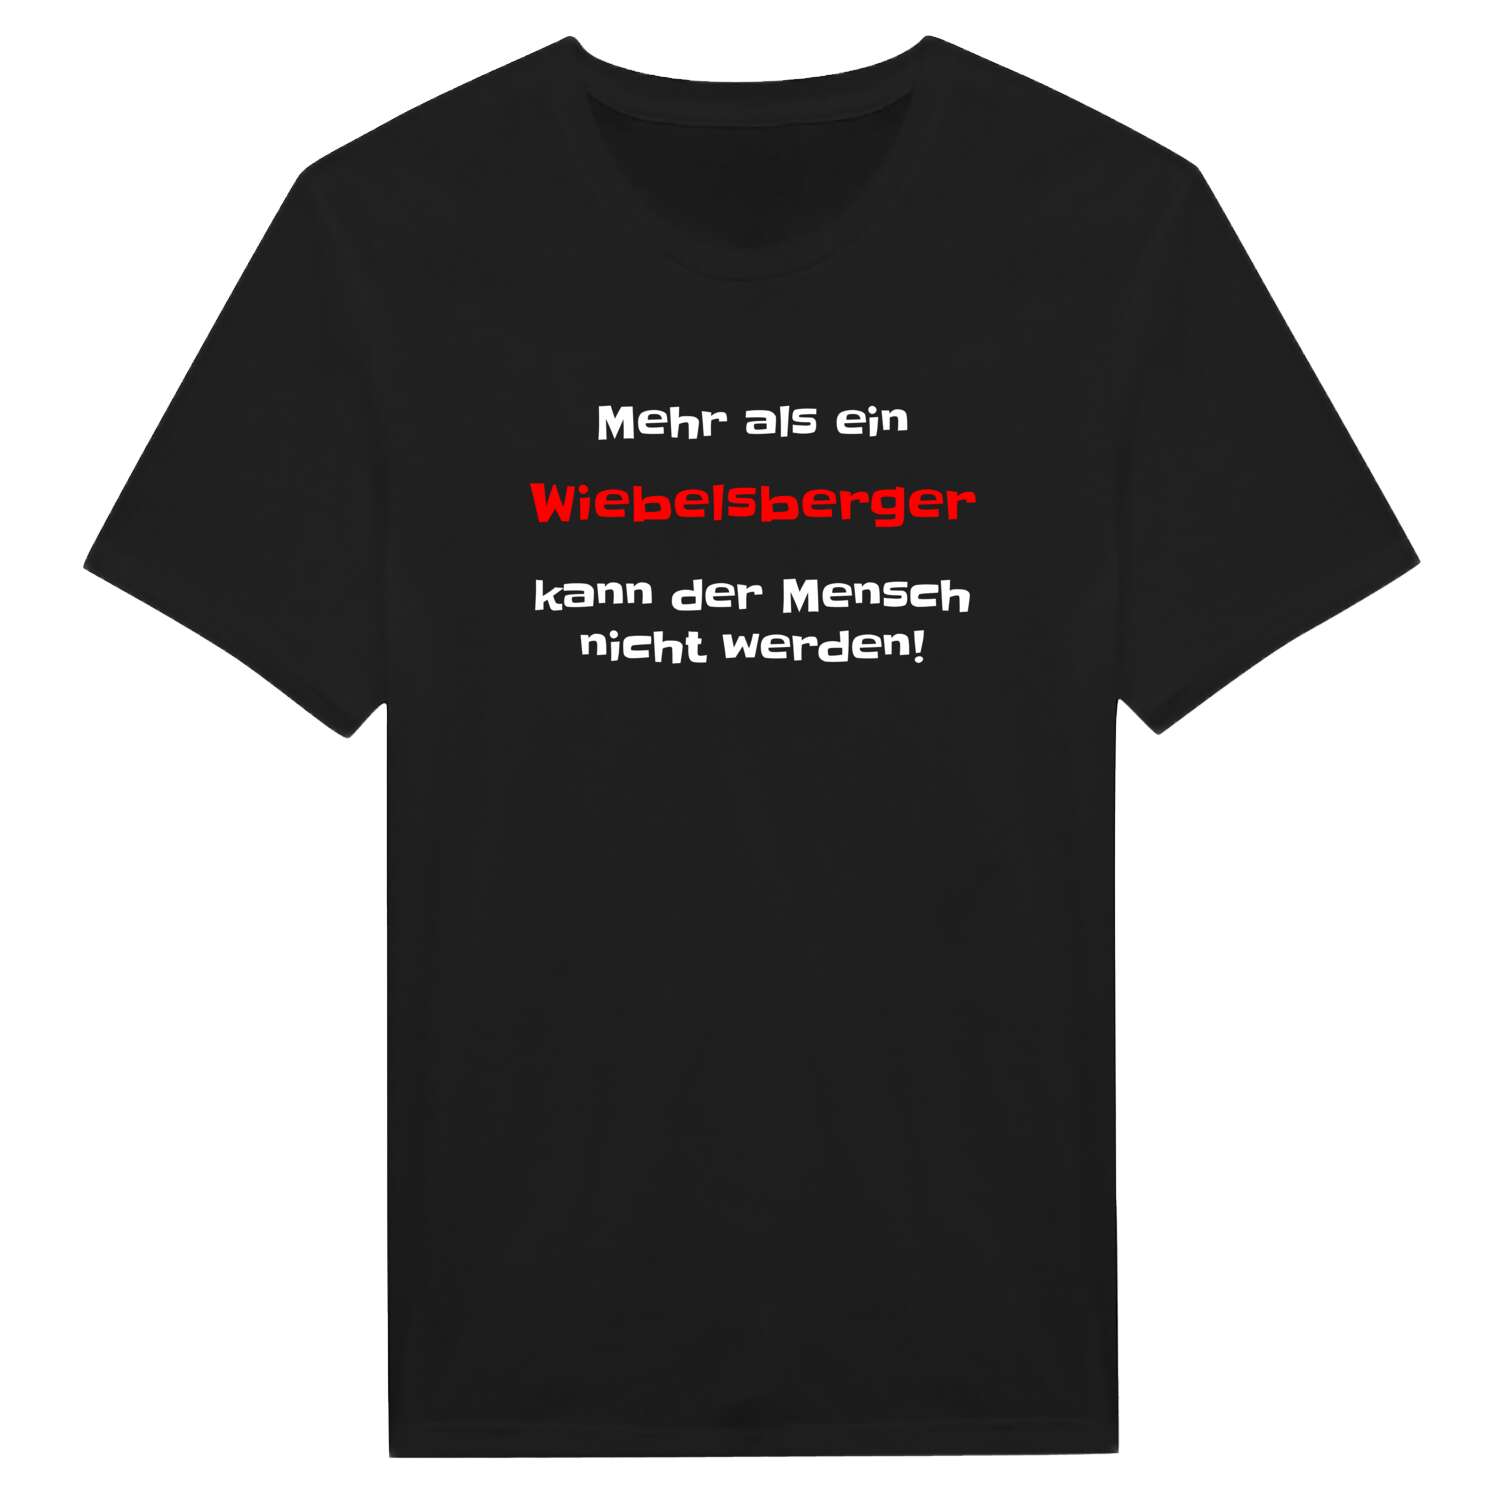 Wiebelsberg T-Shirt »Mehr als ein«